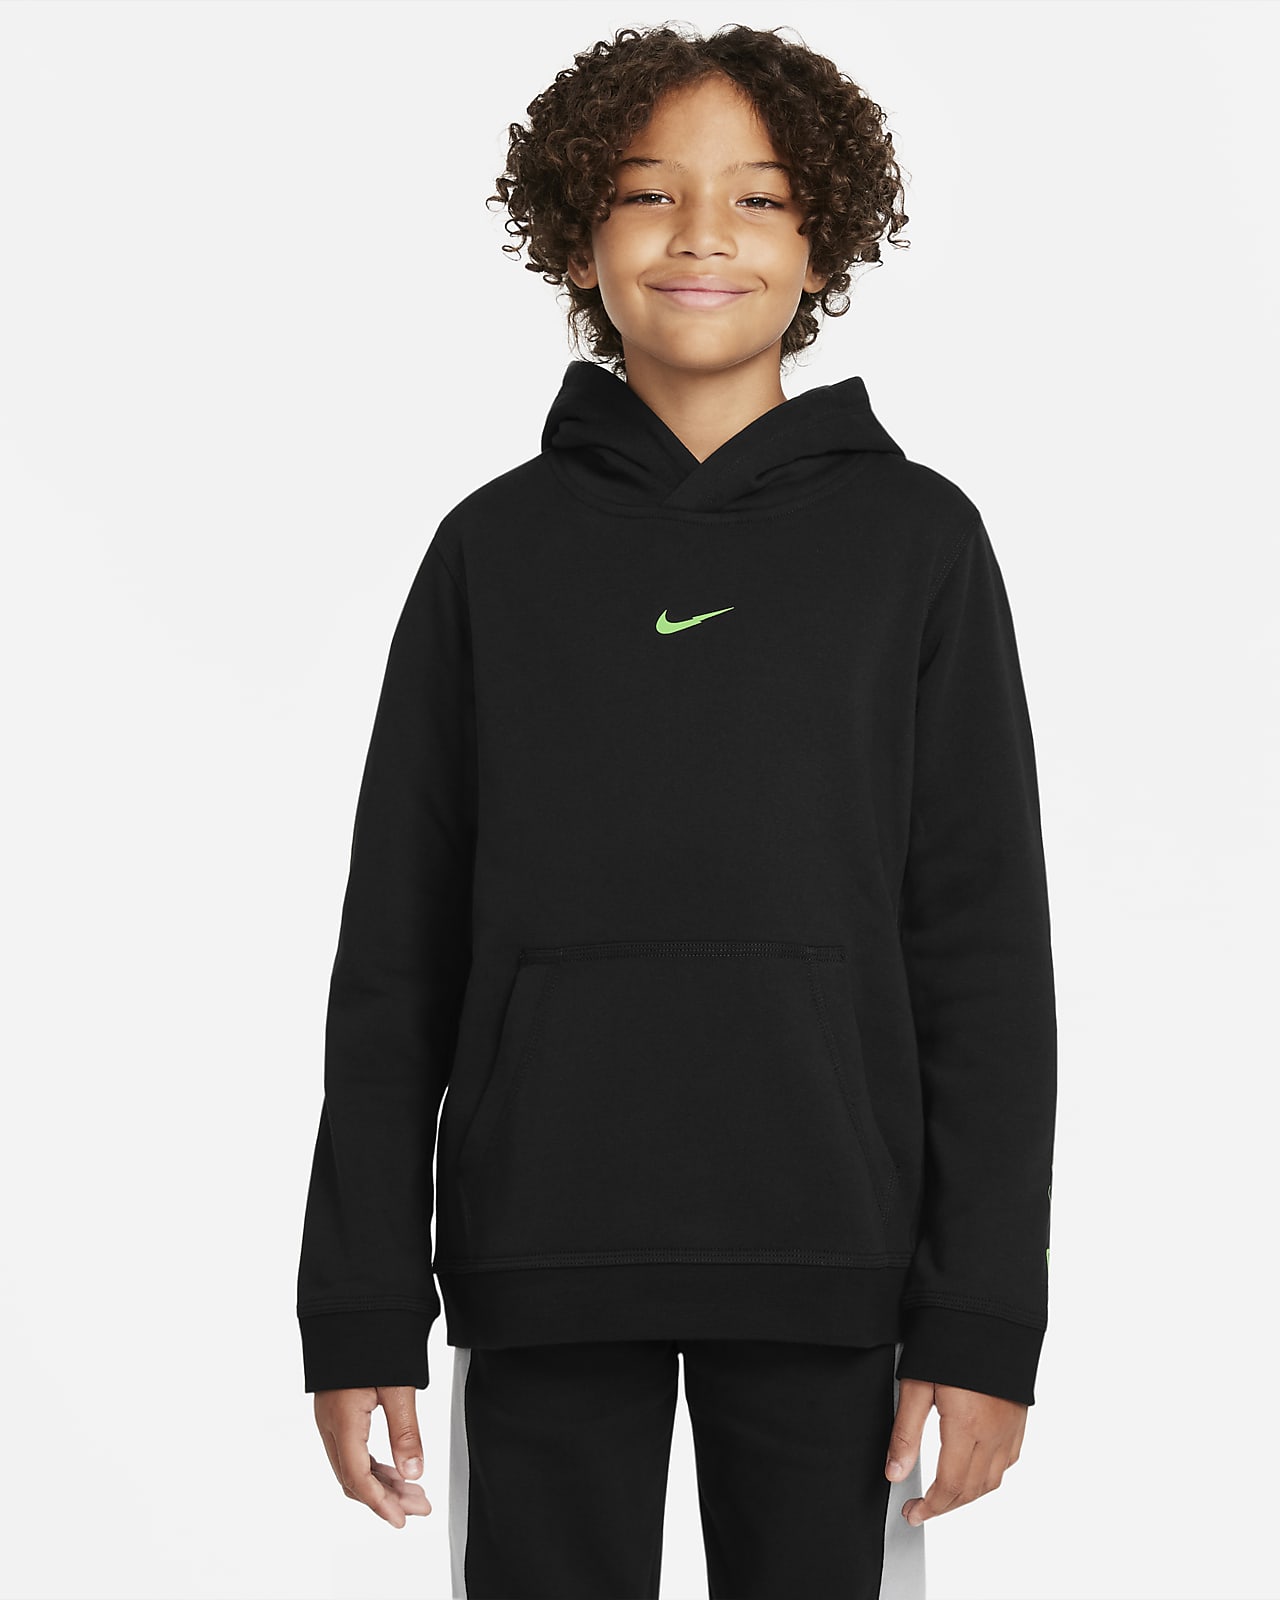 Nike Sportswear Older Kids' (Boys') Fleece Pullover Hoodie